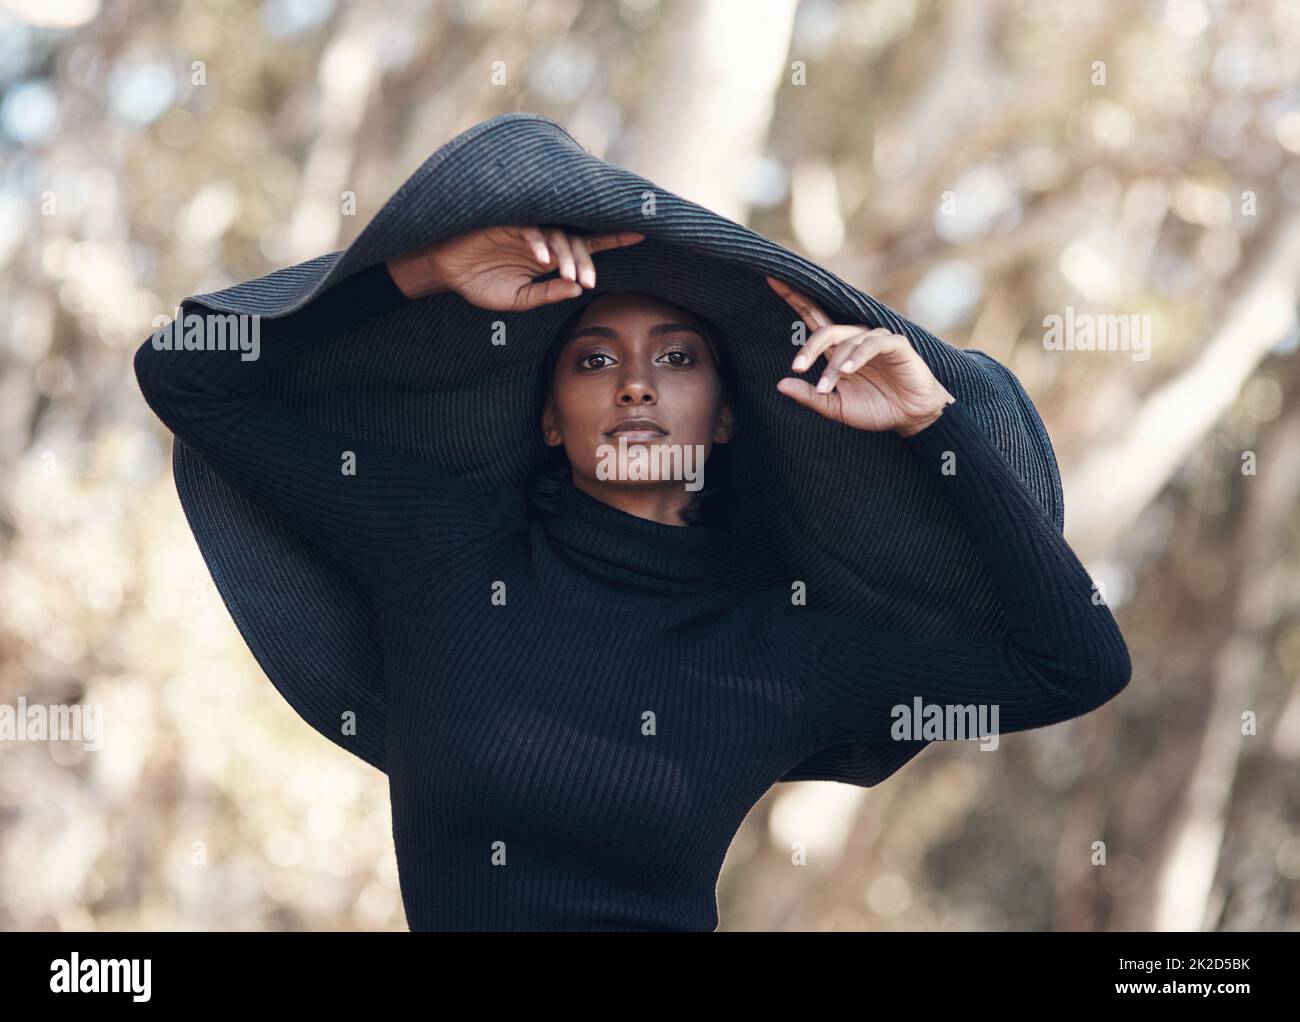 Ich trage Schwarz nur an Tagen, die mit yenden enden. Aufnahme einer modischen jungen Frau, die vor einem natürlichen Hintergrund posiert. Stockfoto